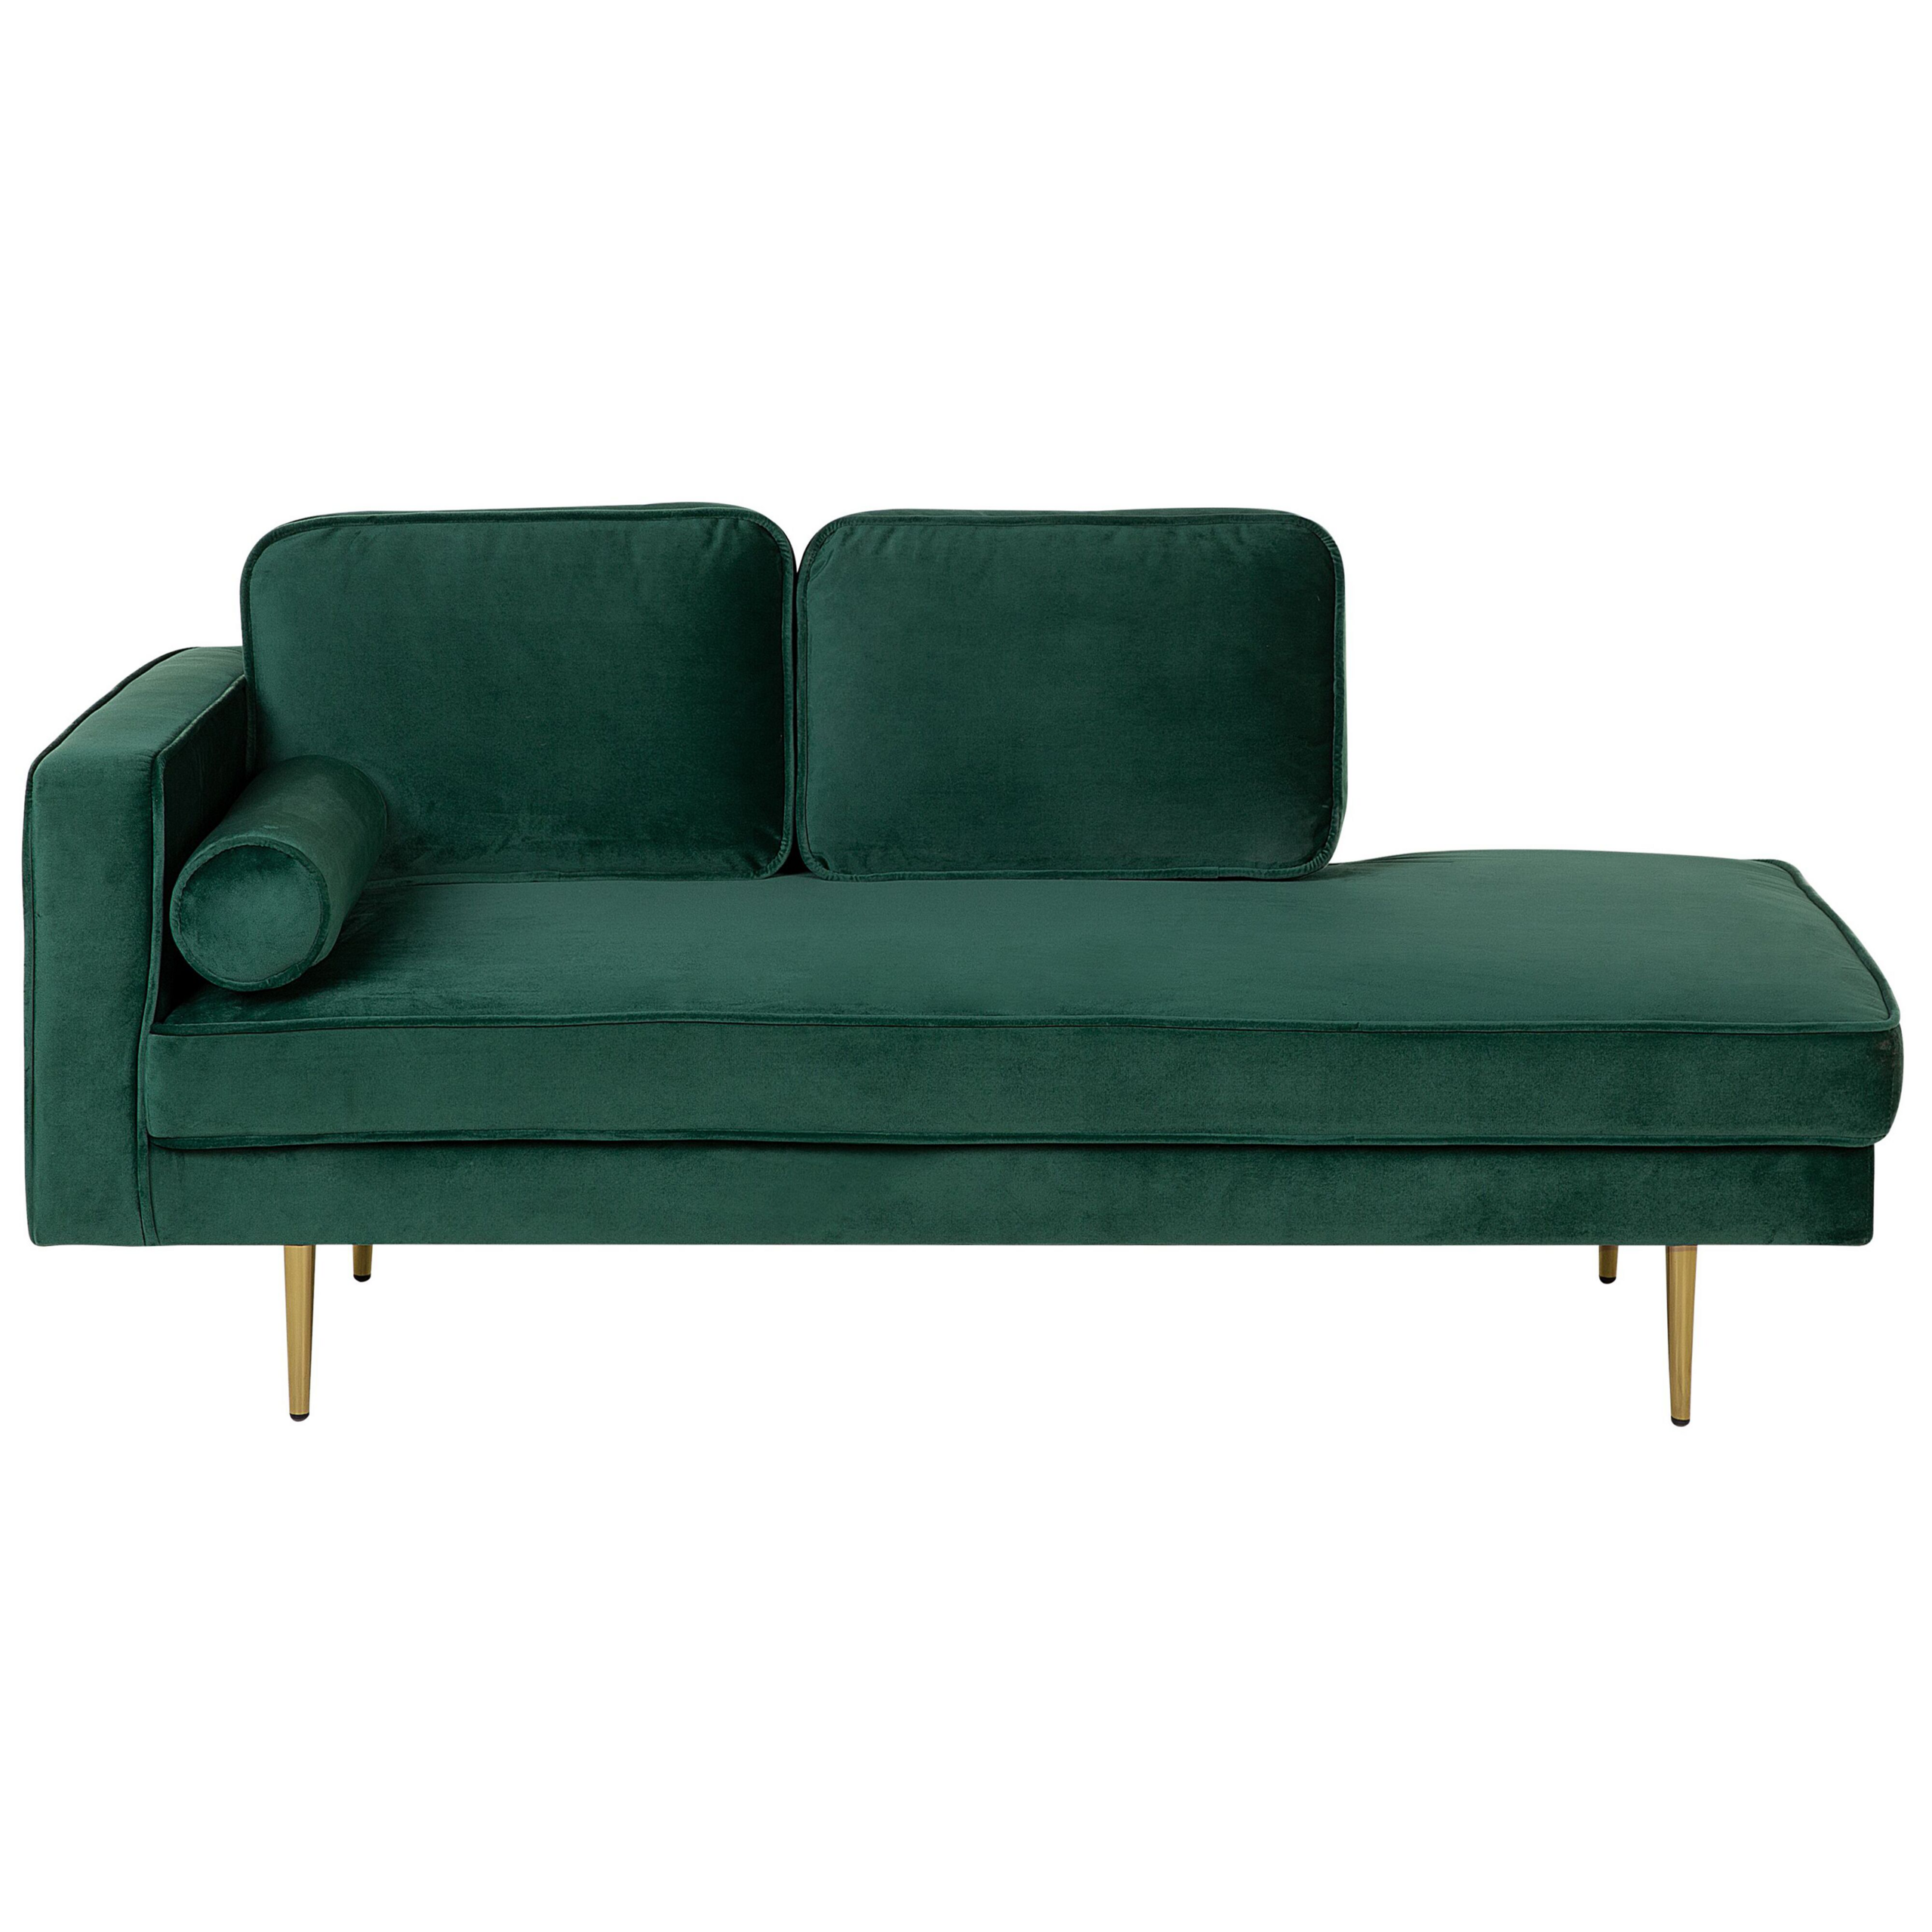 Beliani Chaise Lounge Emerald Green Velvet Upholstered Left Hand Orientation Metal Legs Bolster Pillow Modern Design